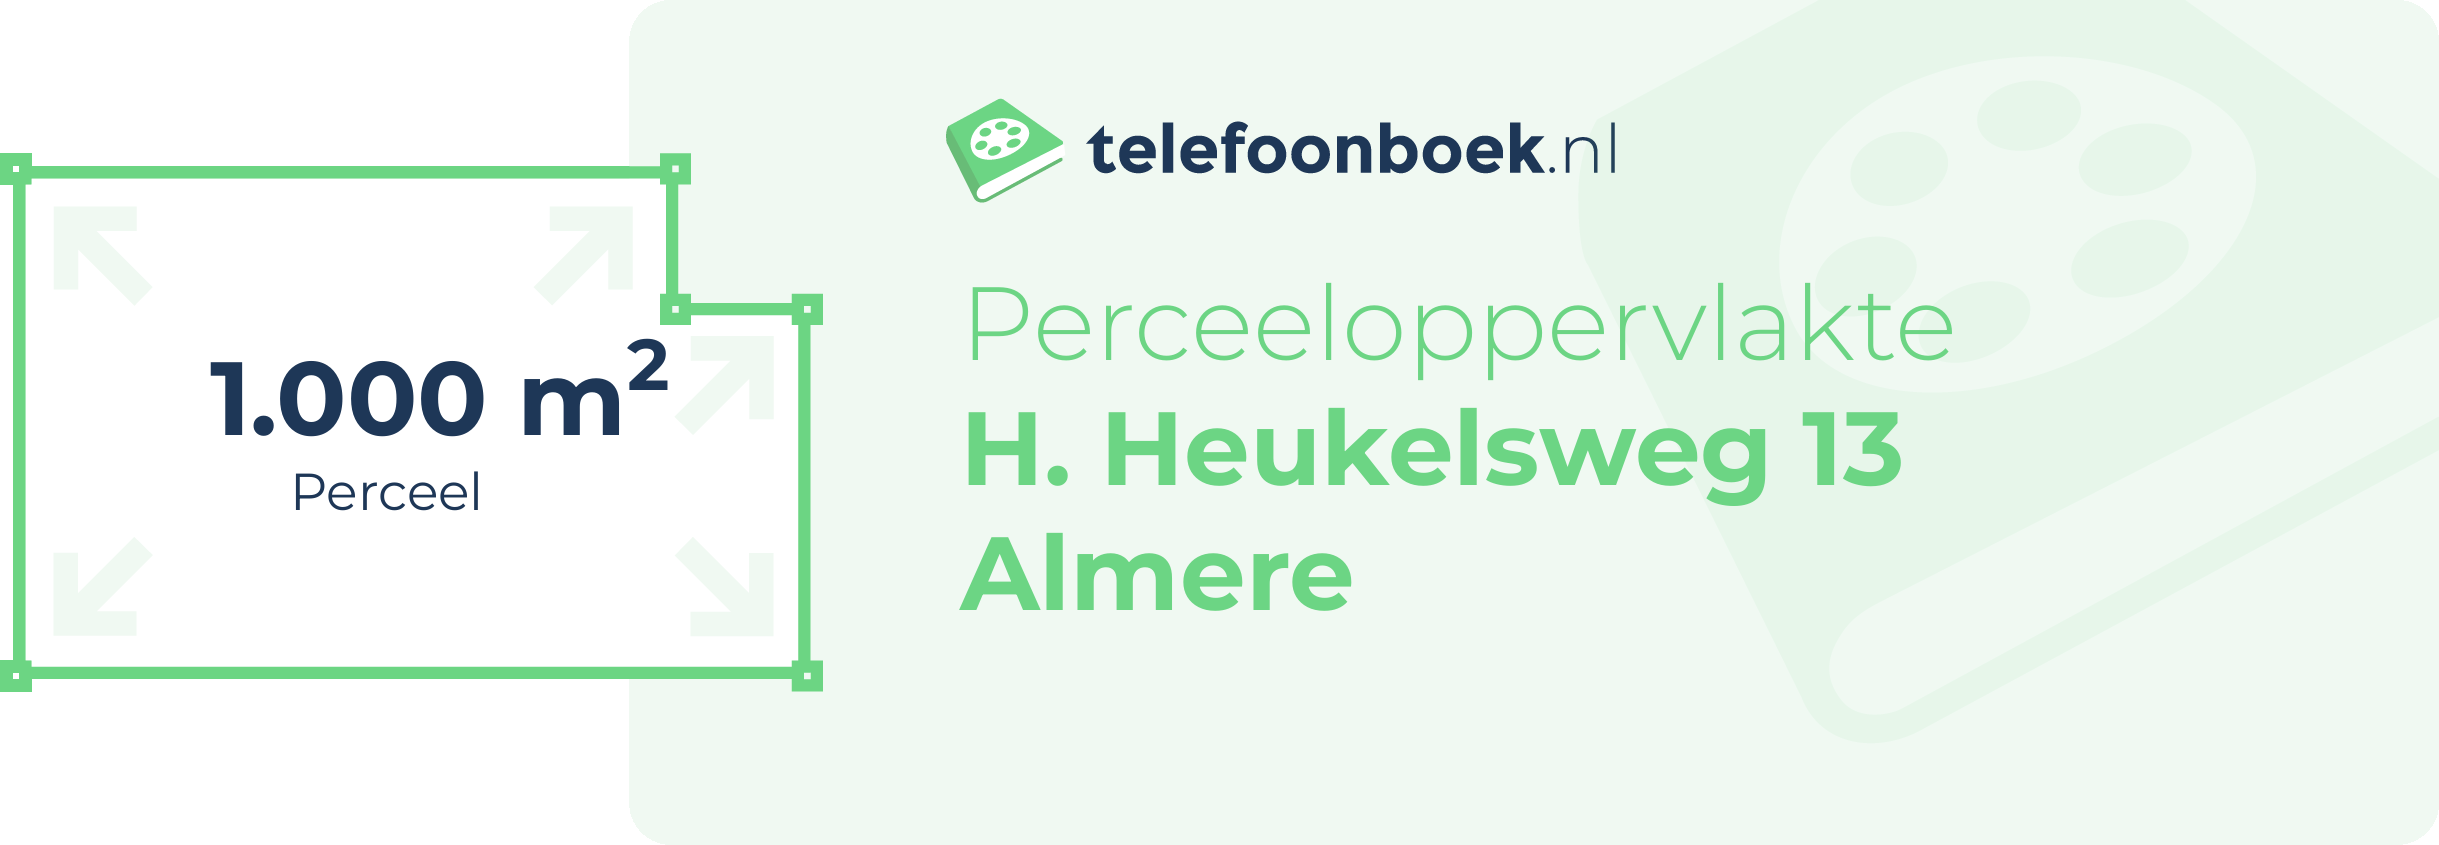 Perceeloppervlakte H. Heukelsweg 13 Almere